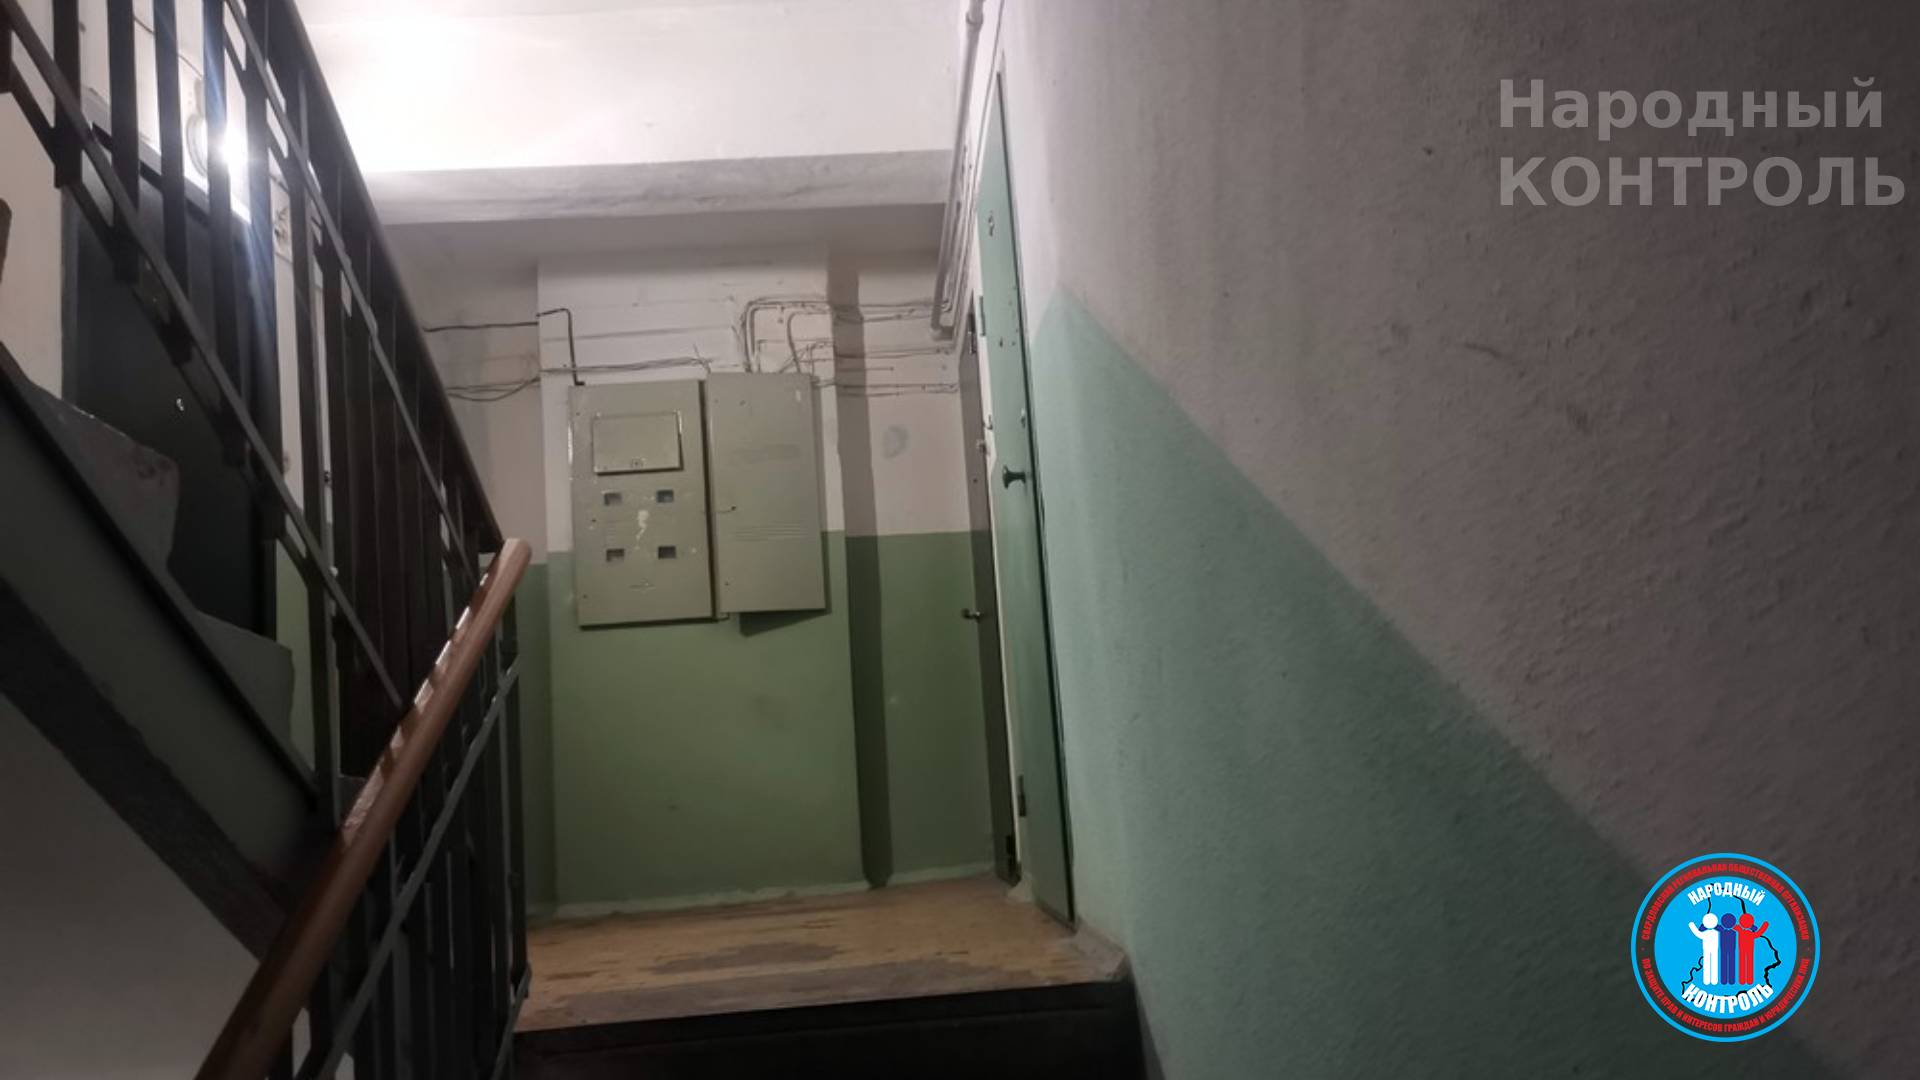 Жалоба жильцов дома на Бажова, 223 по поводу незаконного проживания в нежилом помещении, принадлежащем УОМЗ